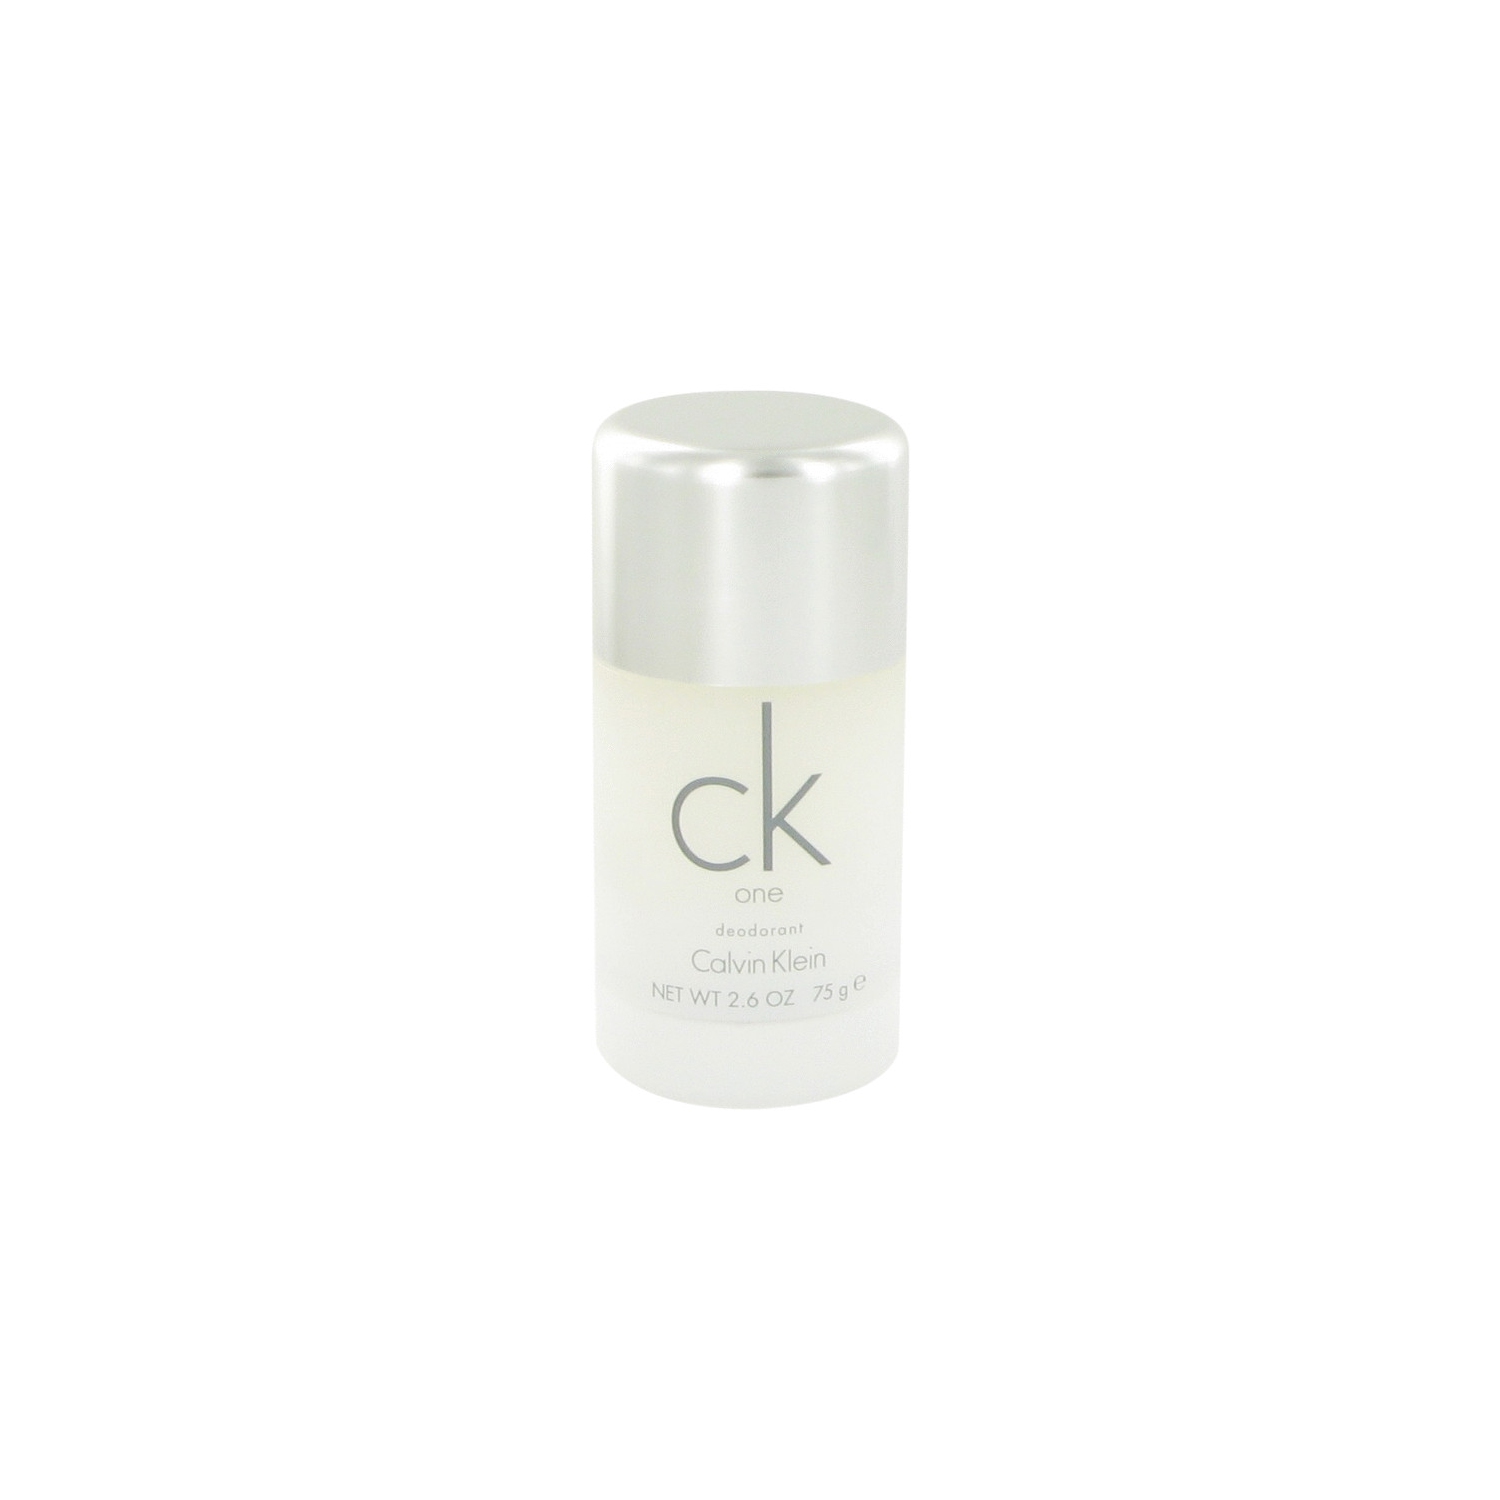 CK ONE by Calvin Klein Deodorant Stick (Unisex) 2.6 oz